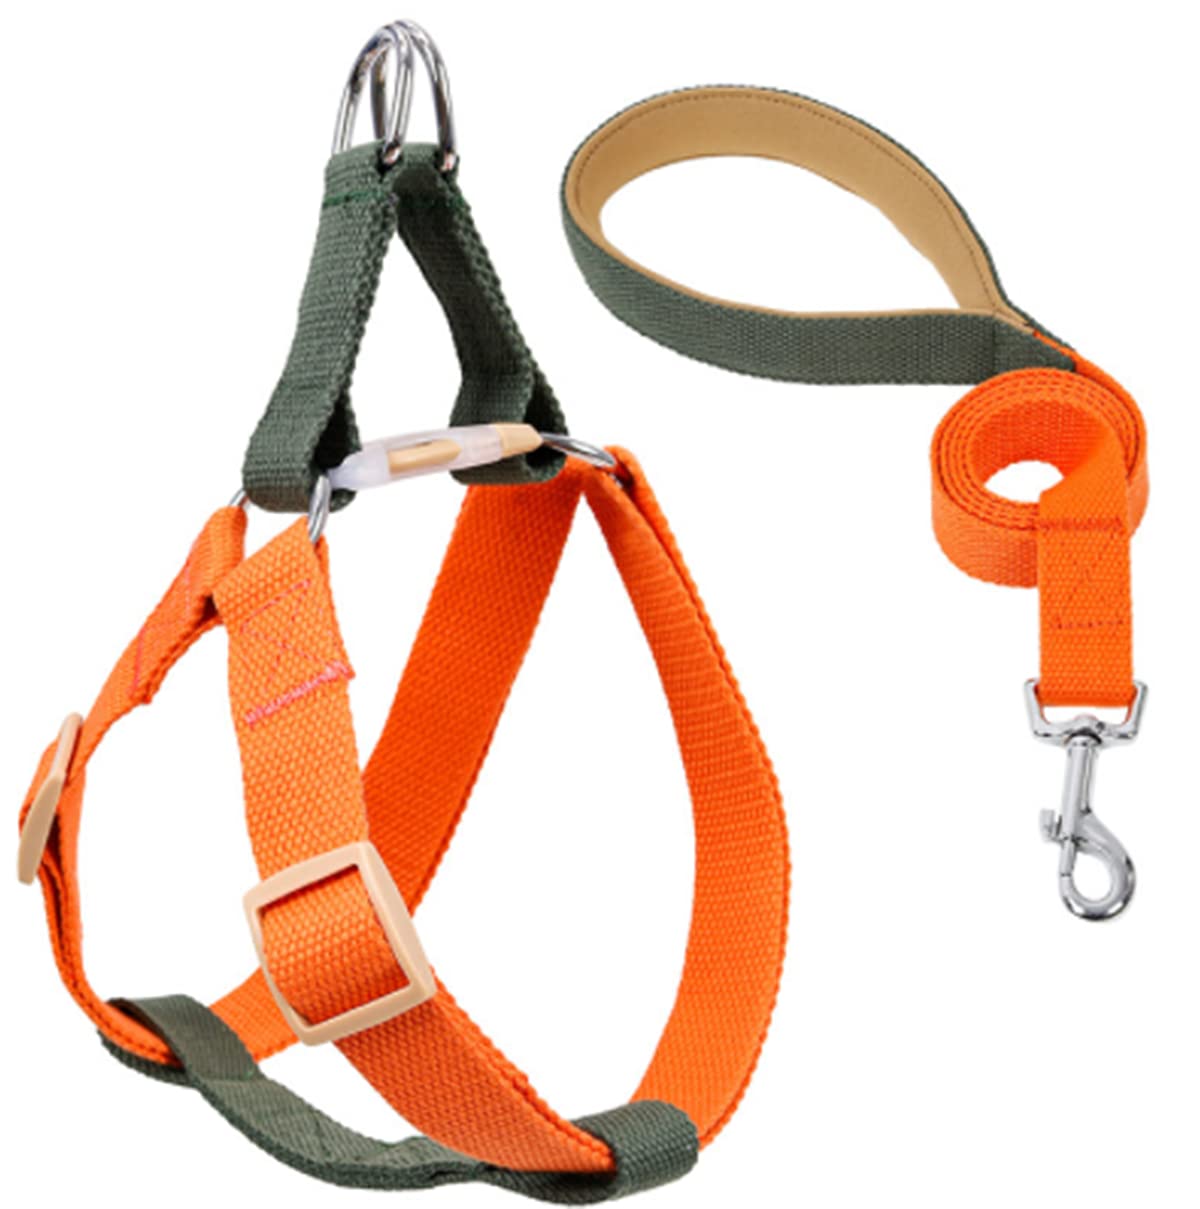 Hundegeschirr mit Leine, Verstellbare Heavy Duty No Pull Halfter Harness Har mit starkem Griff für kleine Welpen/Hunde (Grün Orange, S)